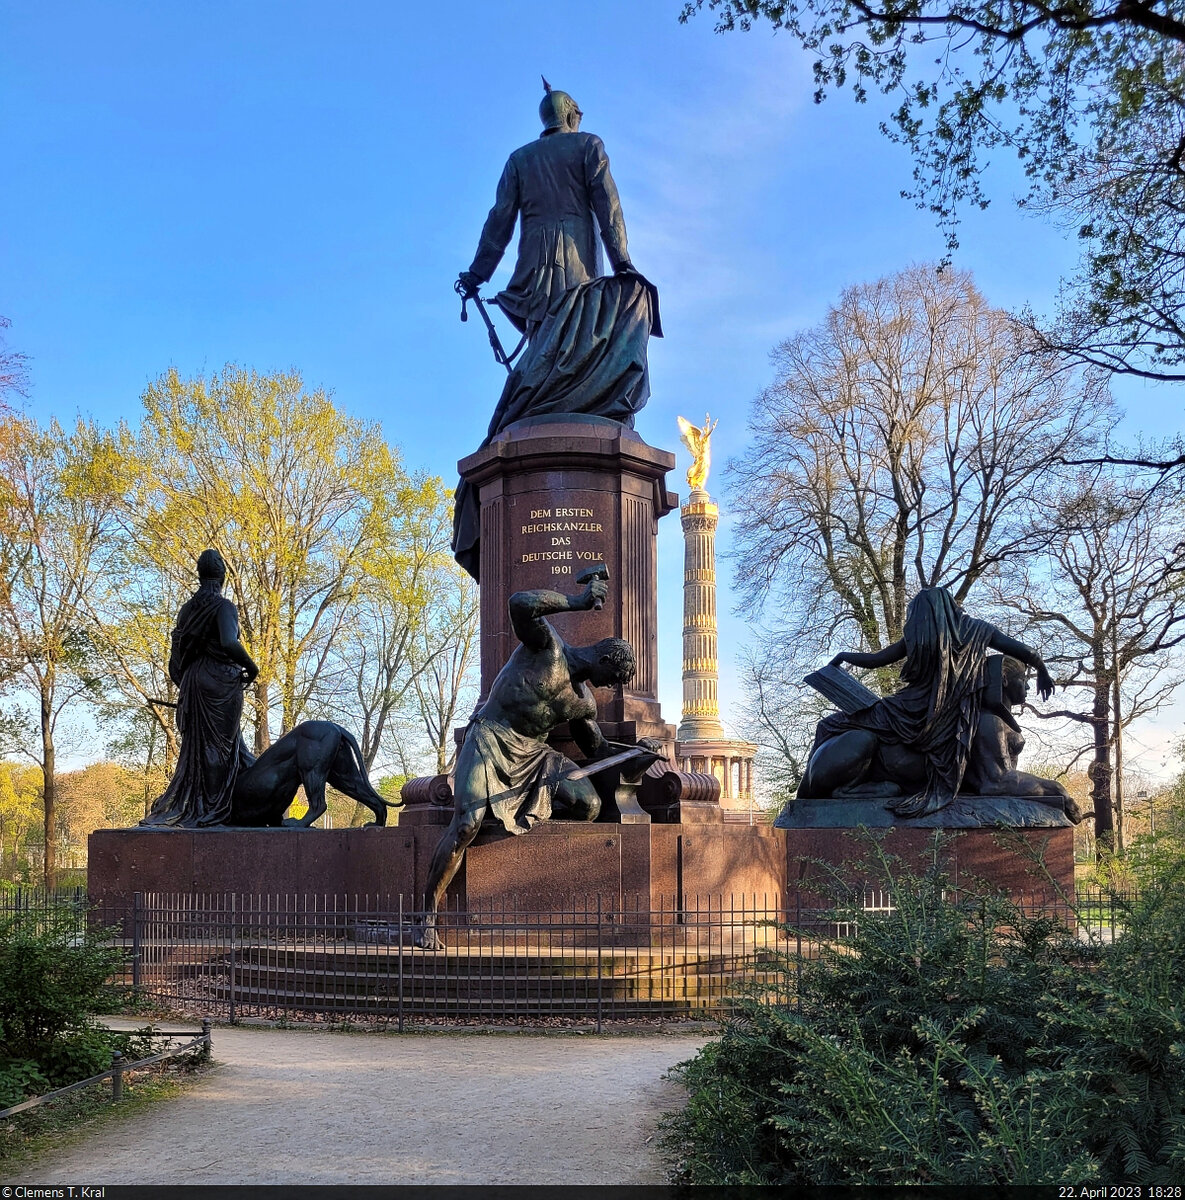 Bismarck-Nationaldenkmal und Siegessäule am Großen Stern im Berliner Tiergarten.

🕓 22.4.2023 | 18:28 Uhr